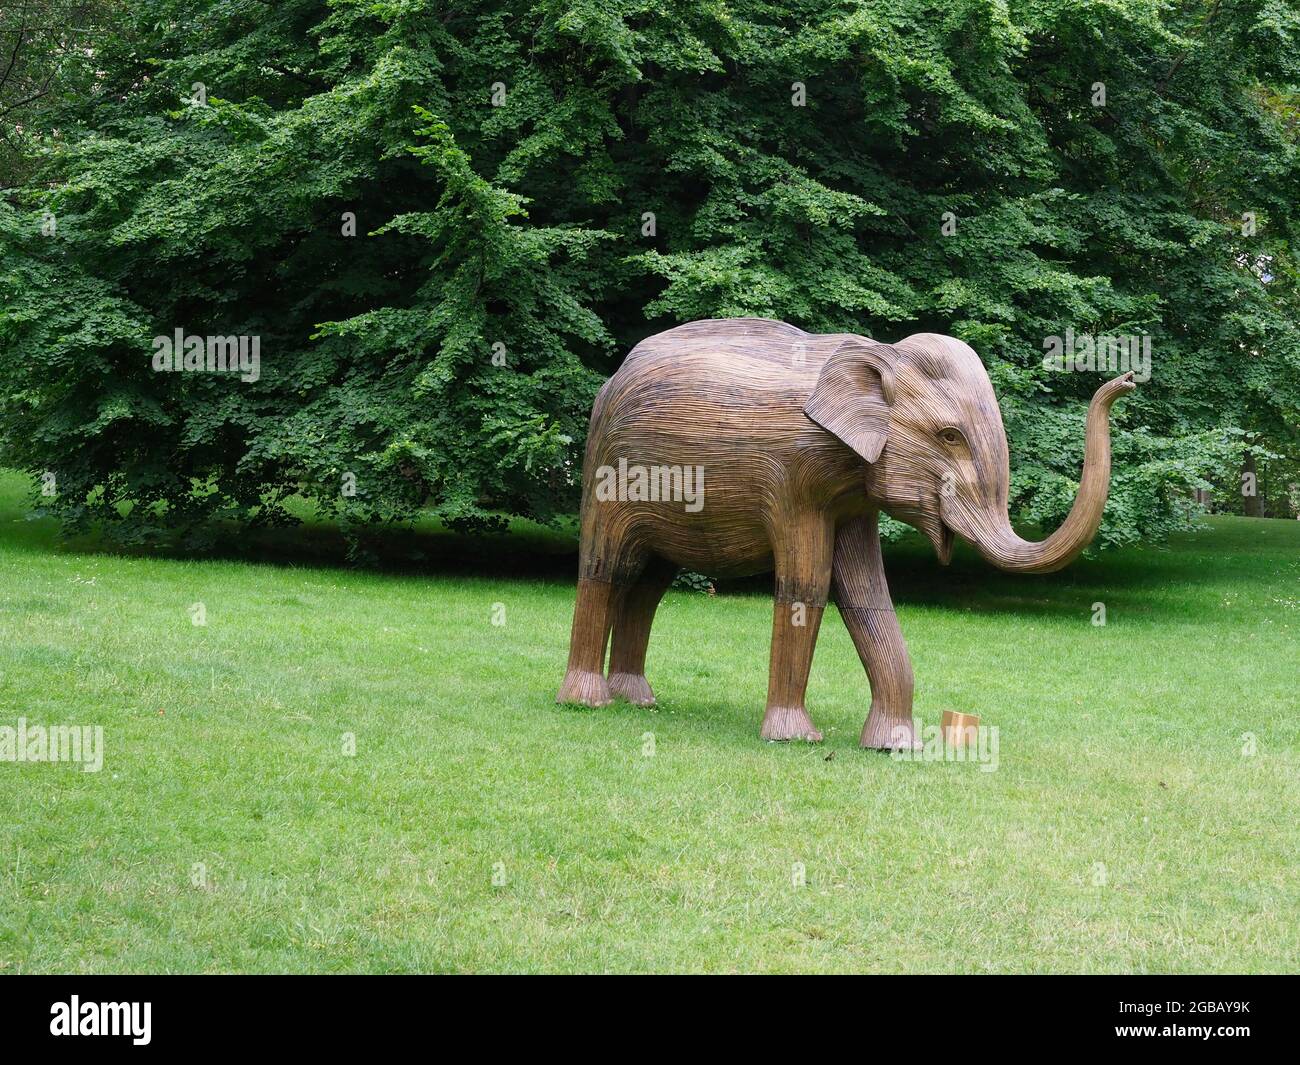 Elefantenskulptur aus einer invasiven Pflanze, die in einem Park ausgestellt ist Stockfoto